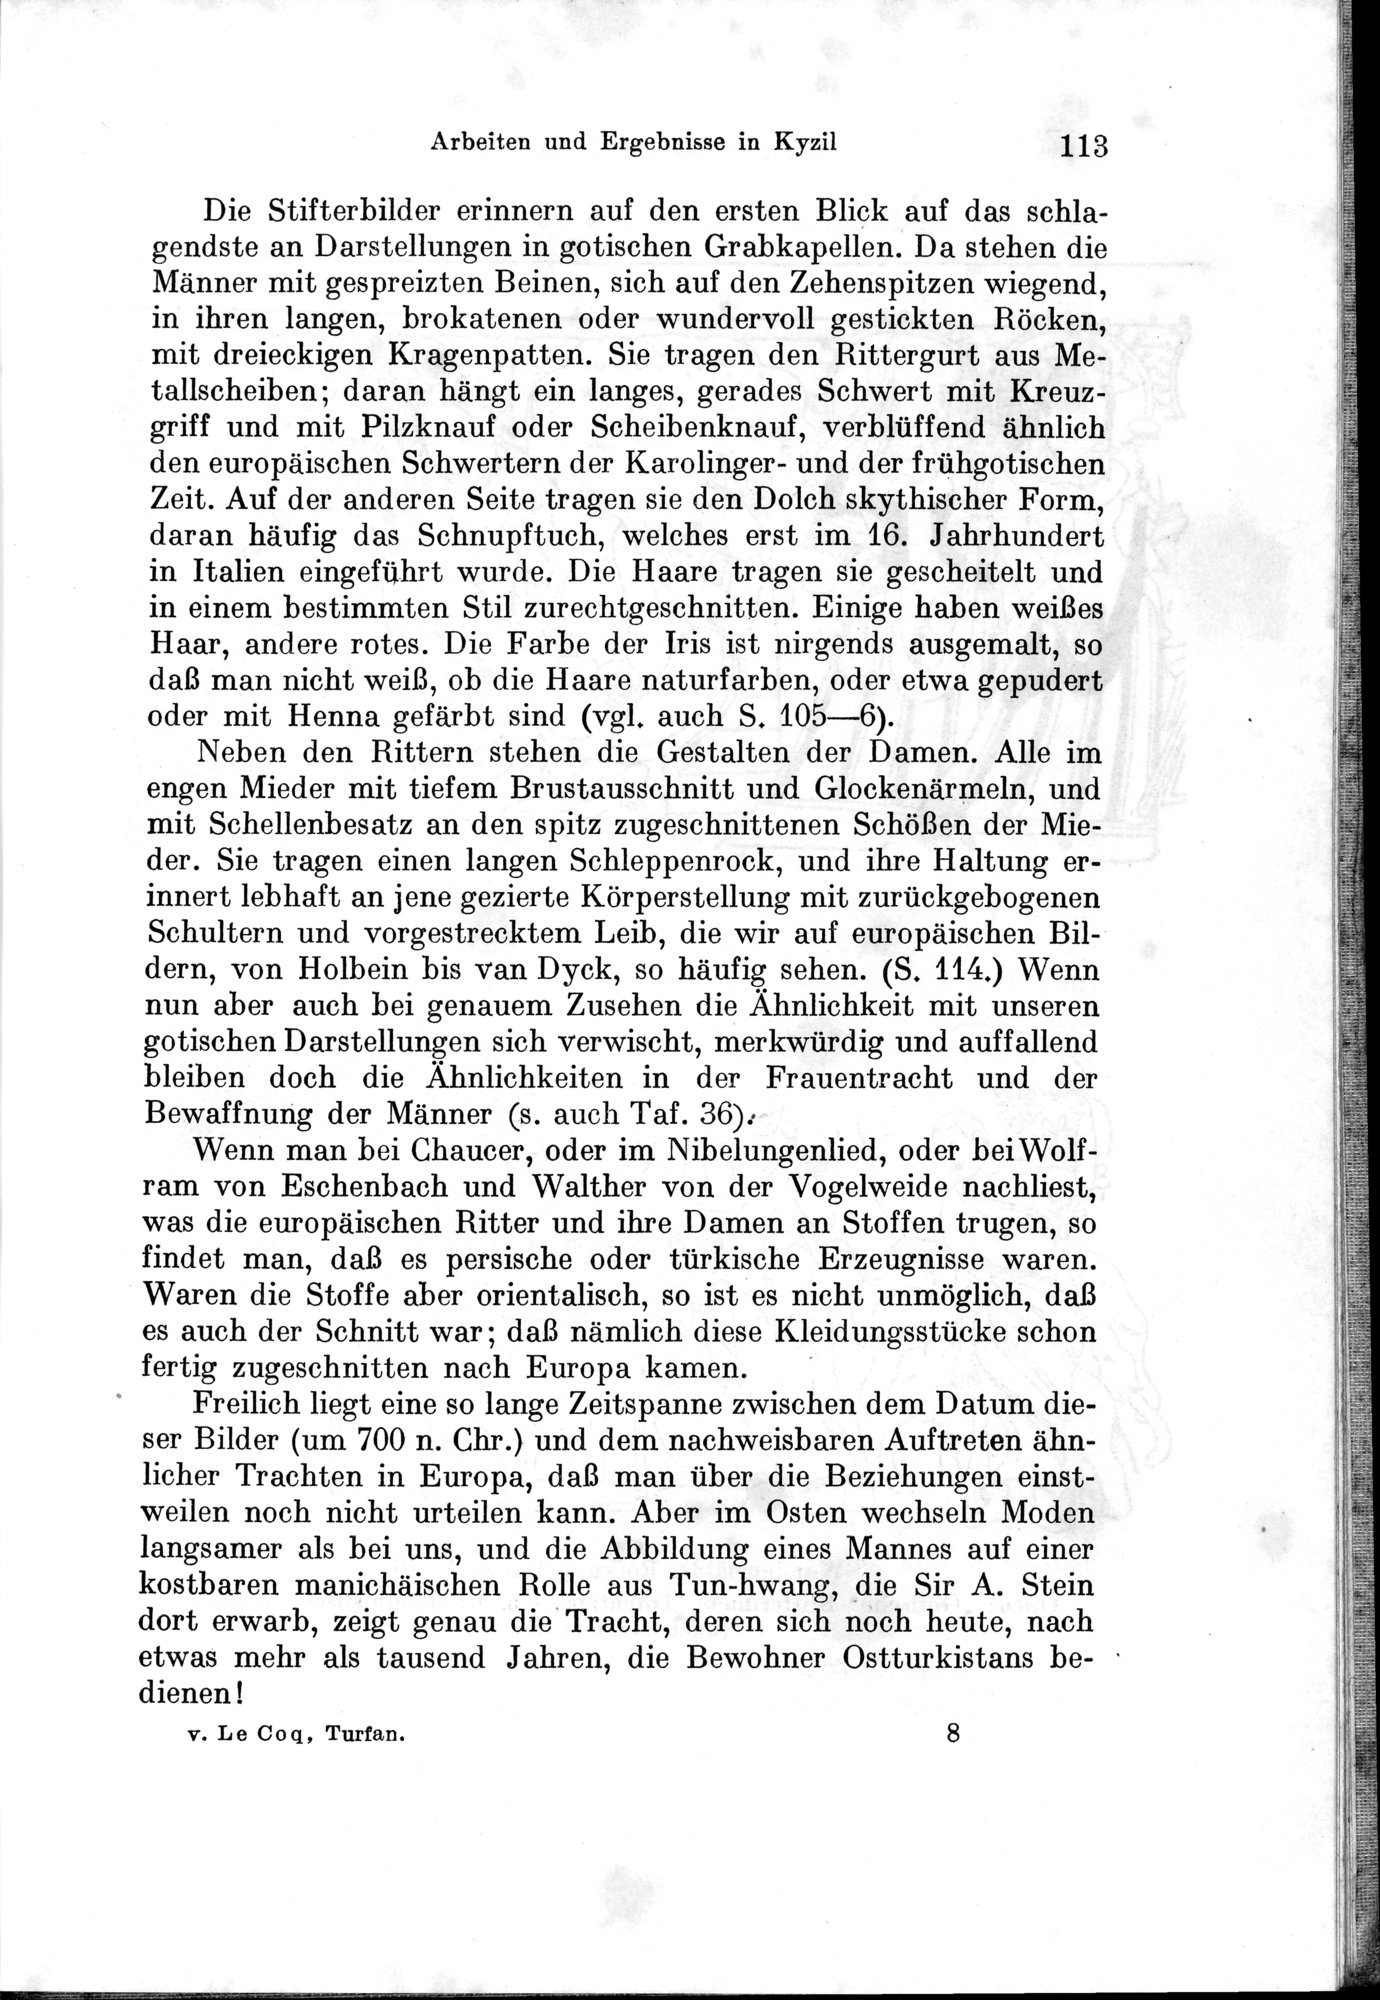 Auf Hellas Spuren in Ostturkistan : vol.1 / Page 165 (Grayscale High Resolution Image)